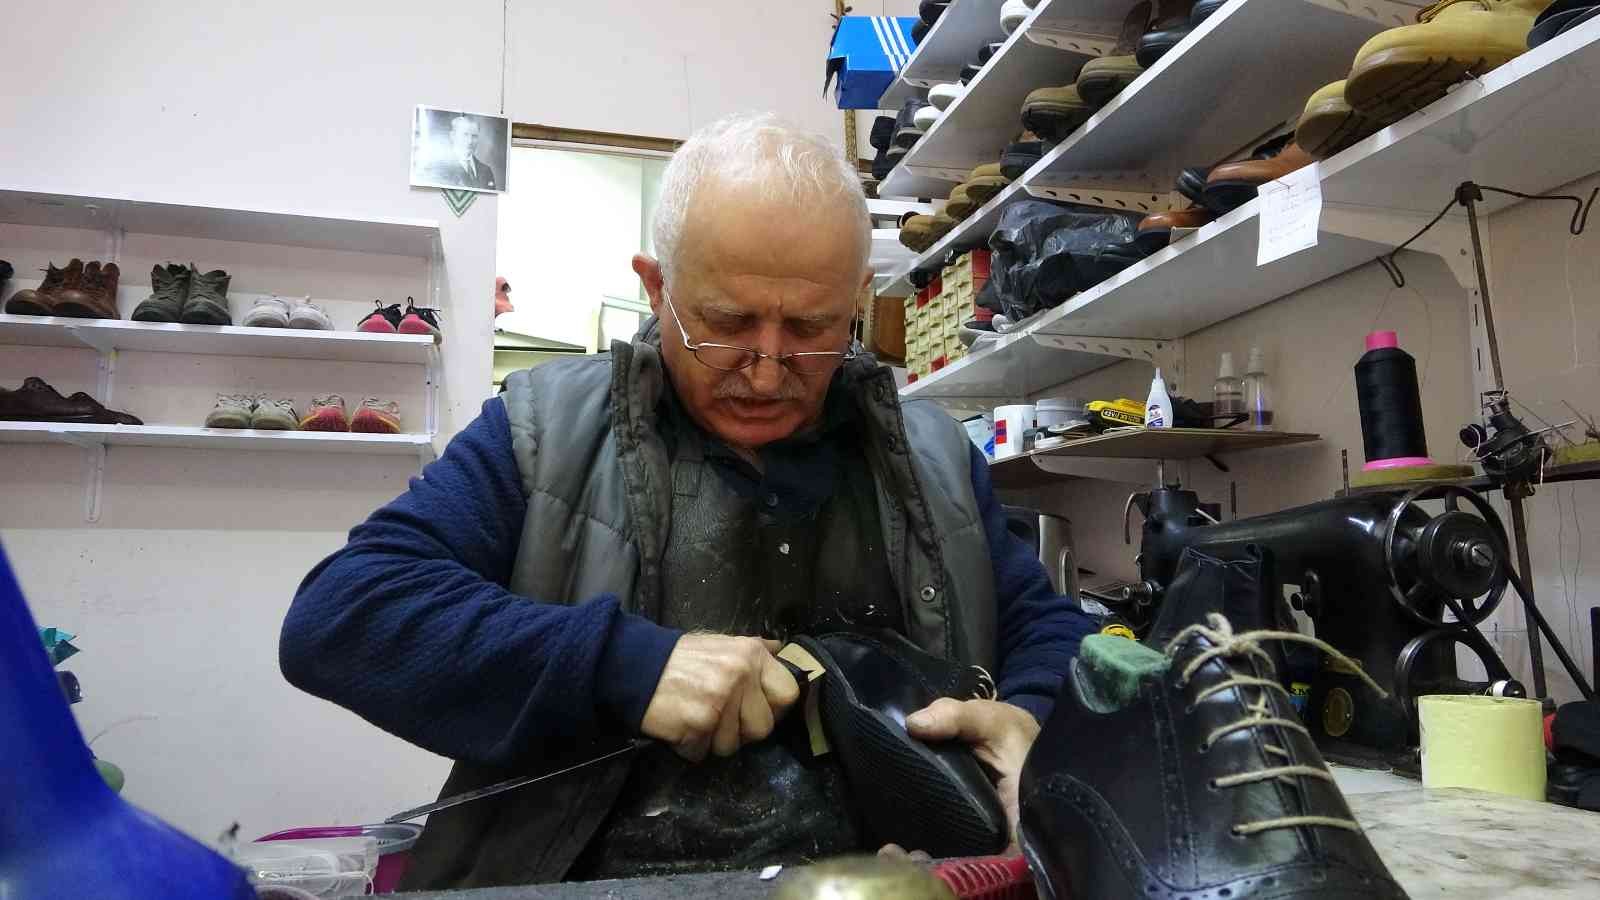 Giresunlu ayakkabı ustası fabrika üretimine karşın yarım asırdır el emeği ayakkabı üretmeyi sürdürüyor #giresun